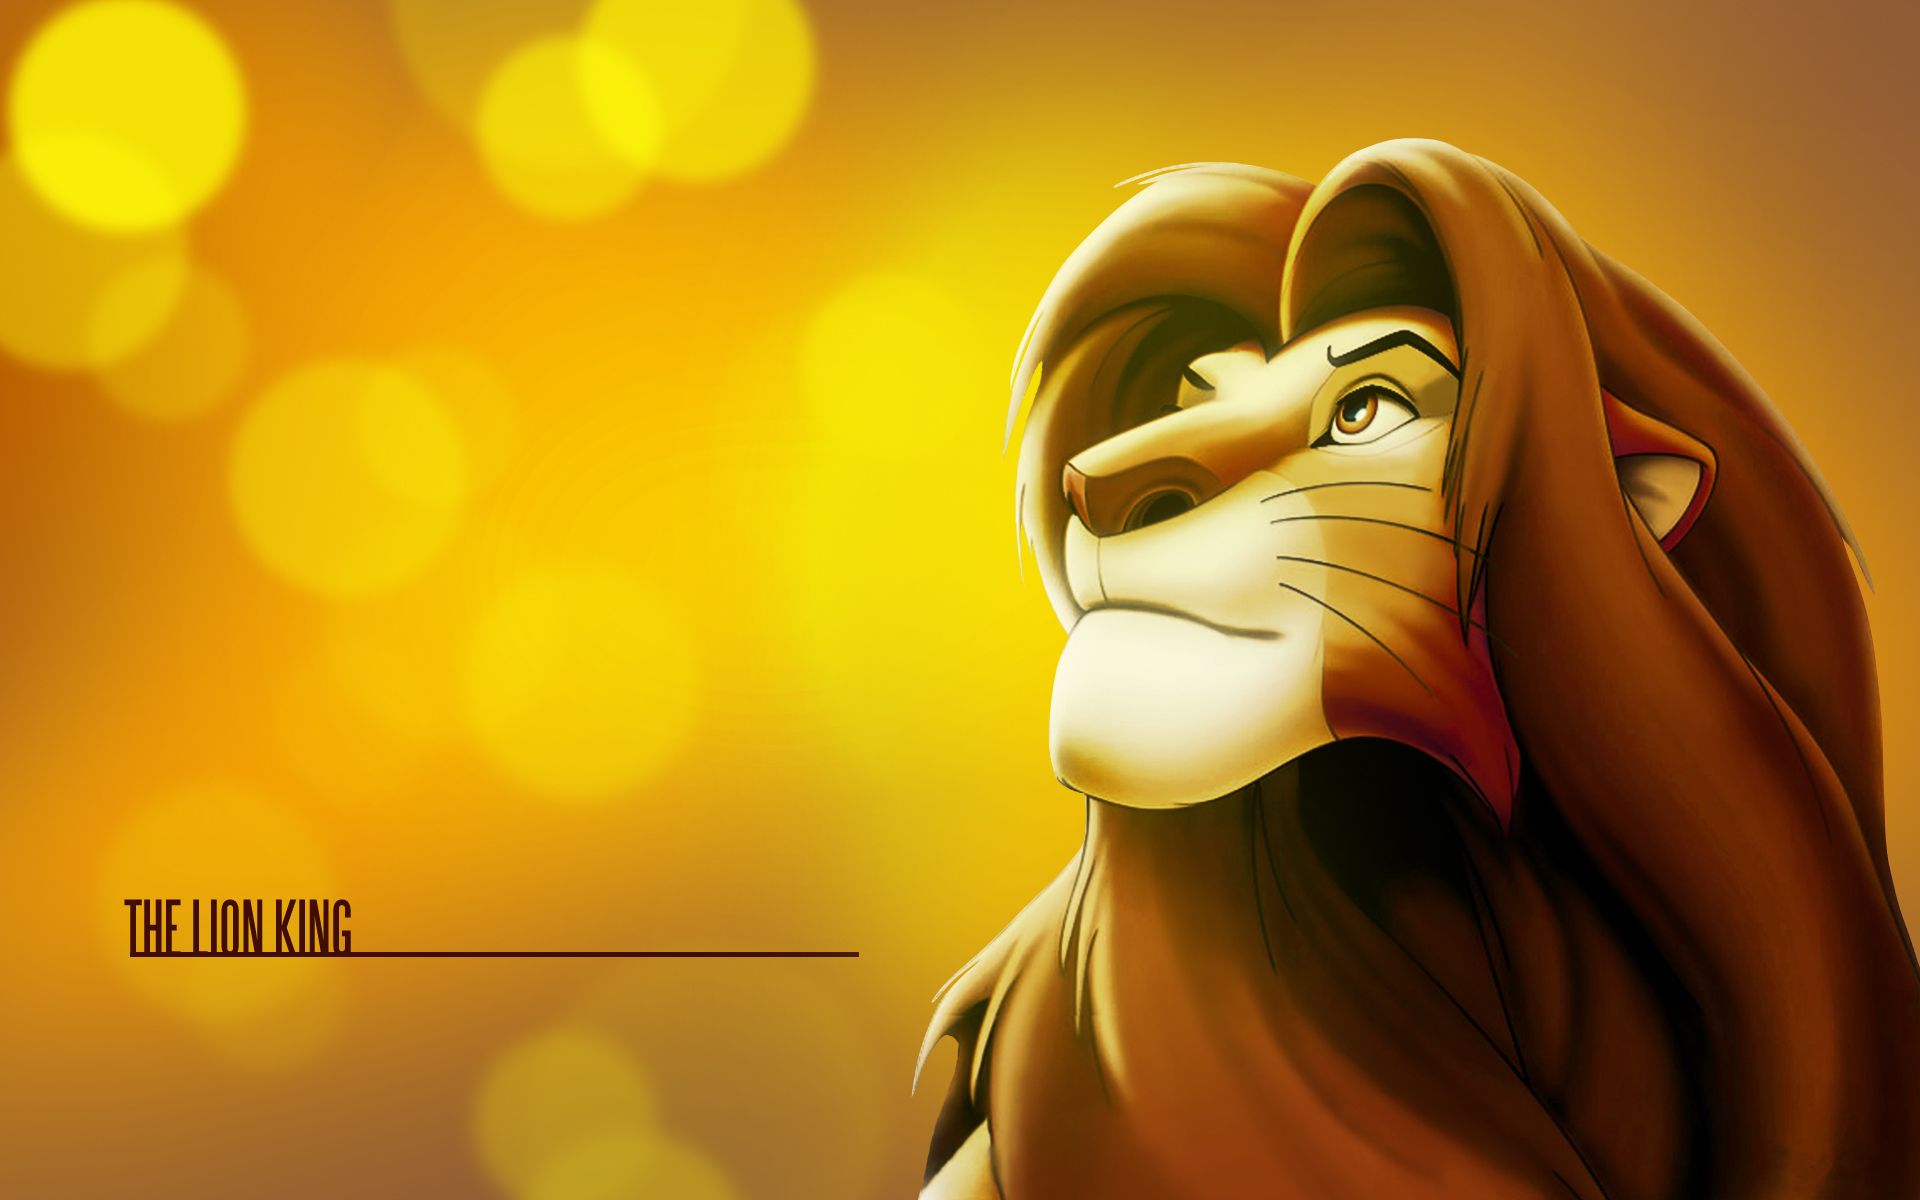 The Lion King Background. Lion King Disney Wallpaper, Skeleton King Wallpaper and Walking Dinosaurs Wallpaper